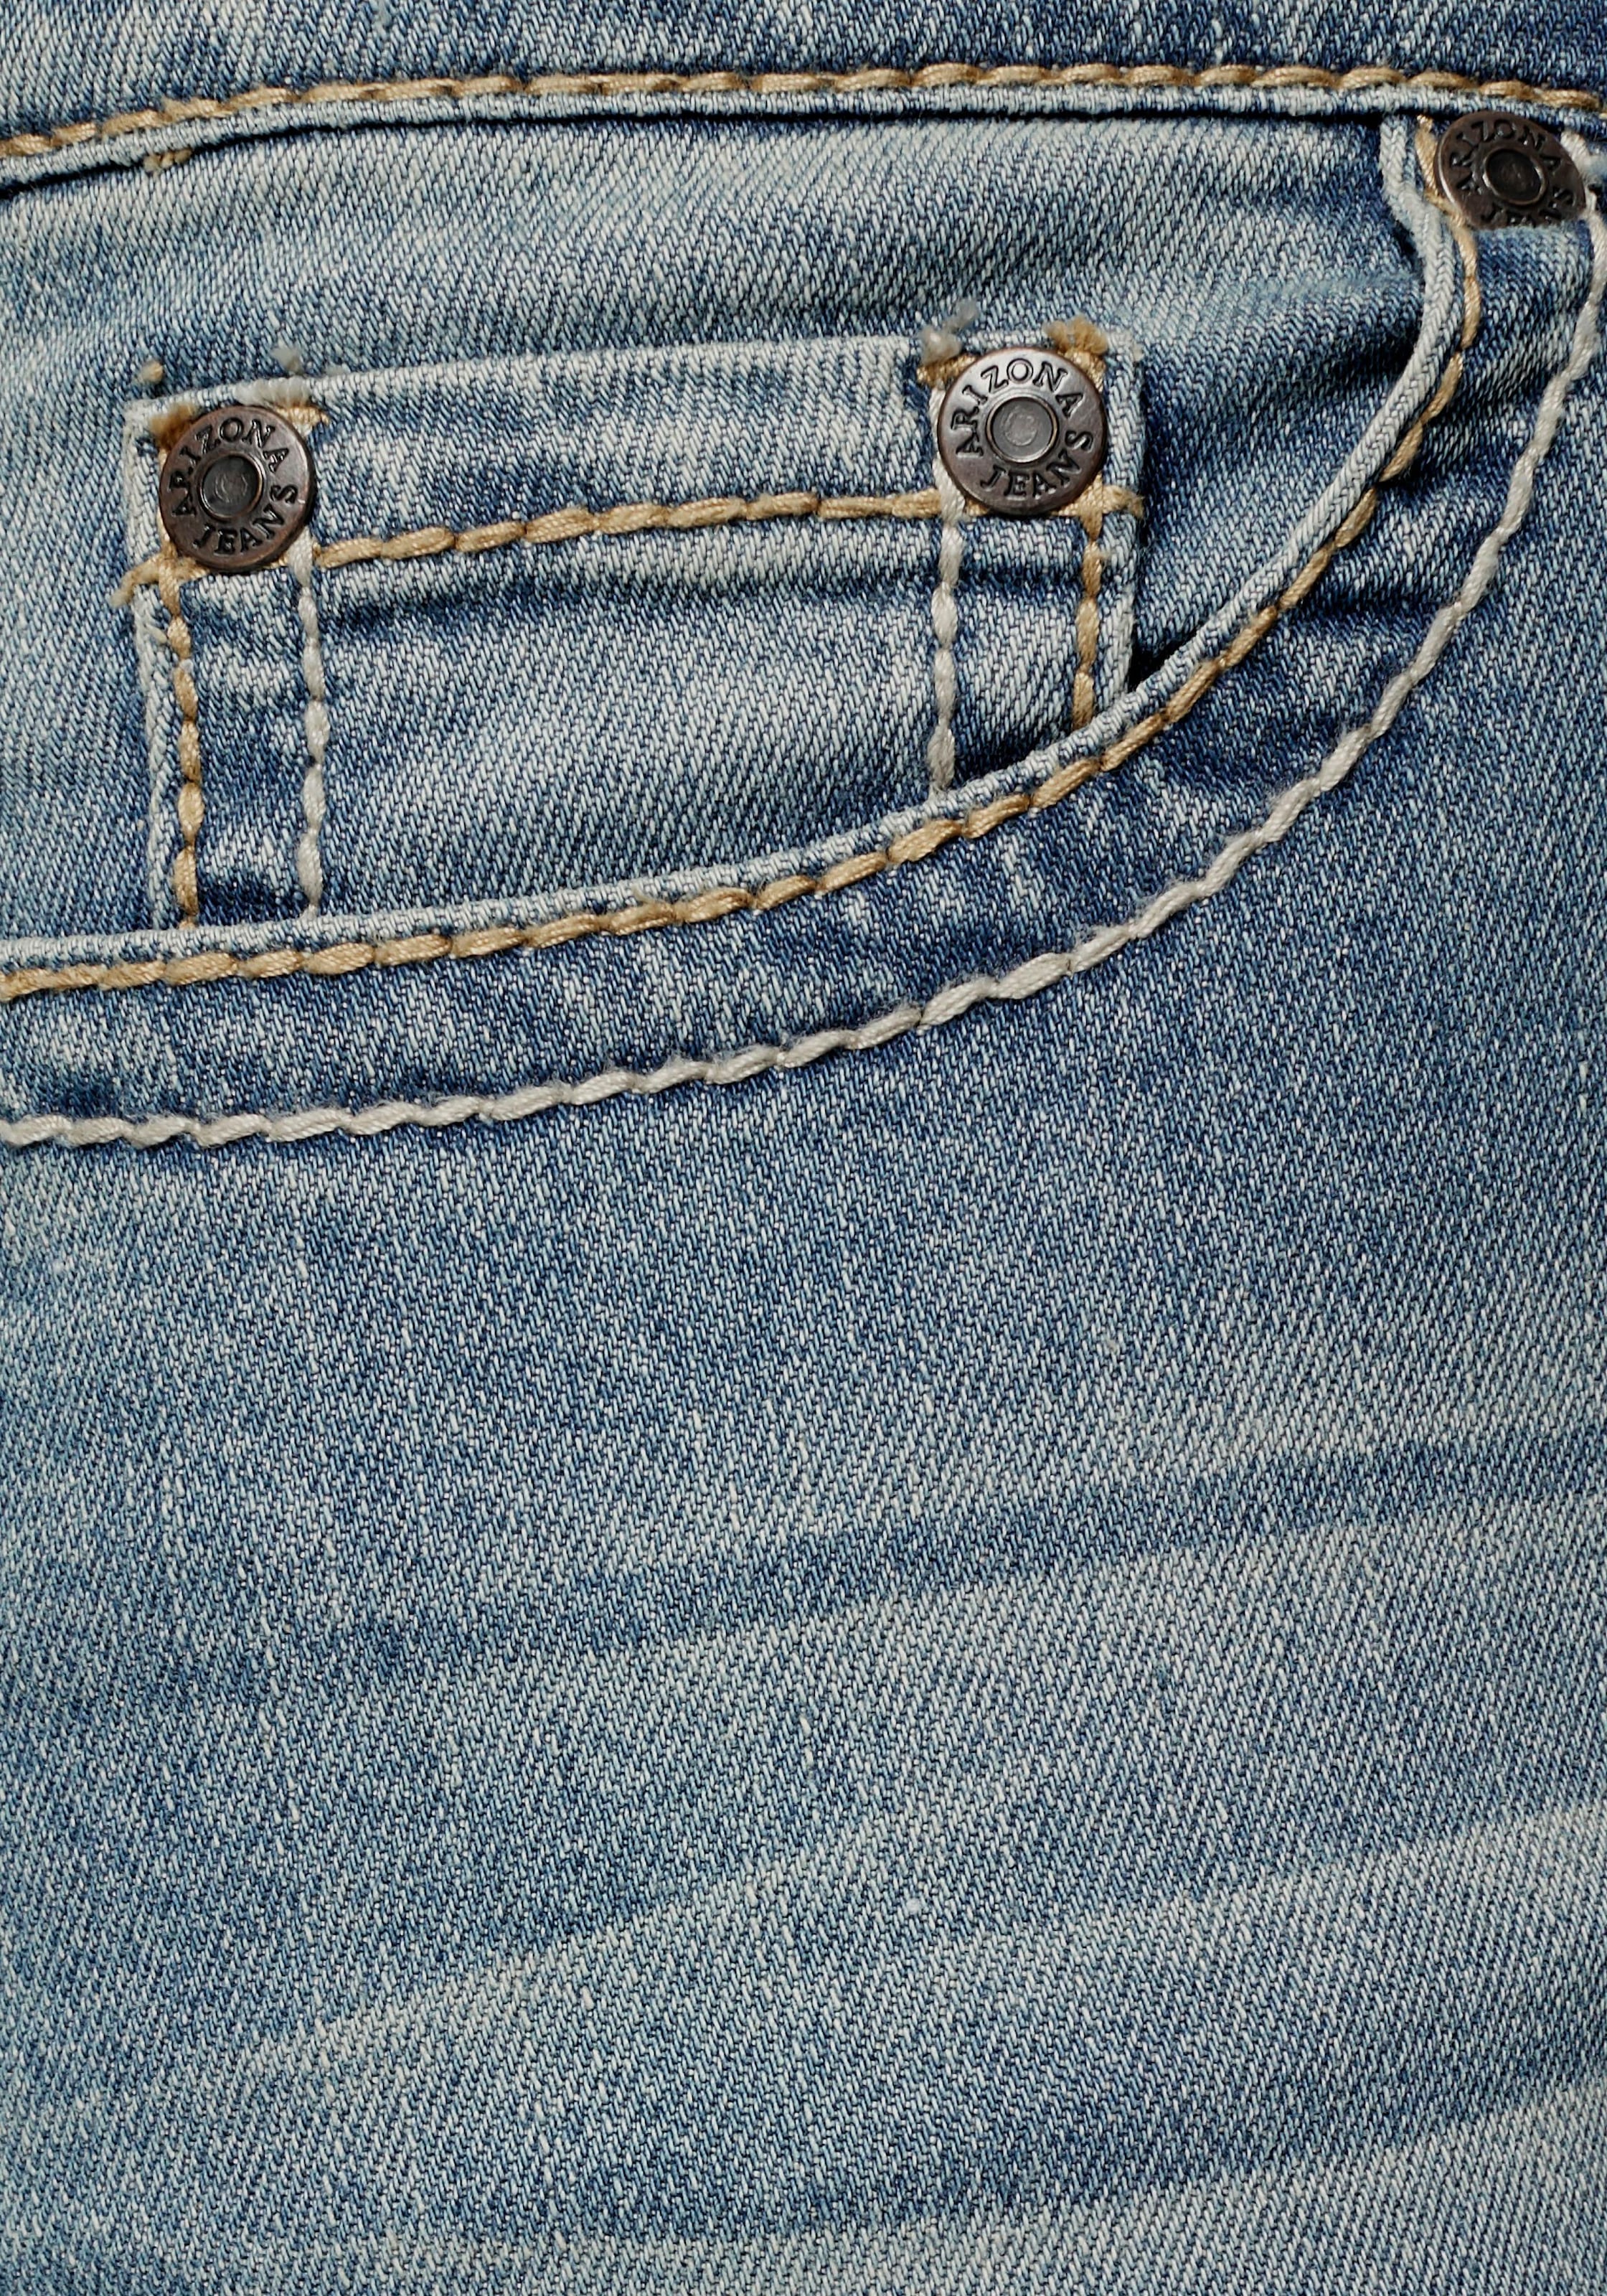 Arizona Gerade Jeans »Kontrastnähte«, Mid Waist